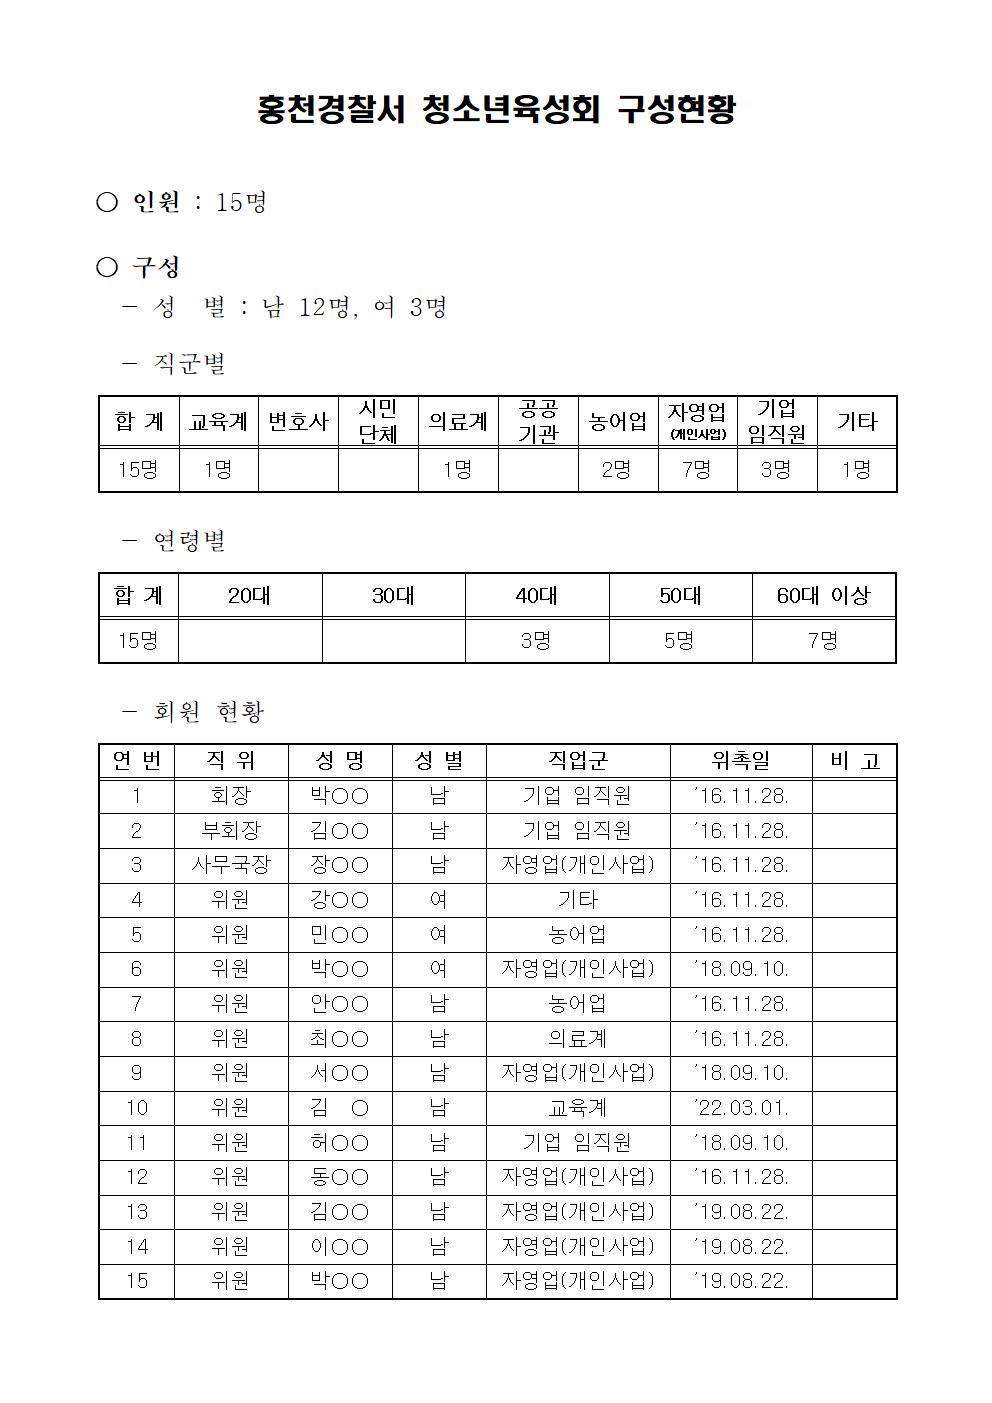 홍천 청소년육성회 구성현황-홍천경찰서 청소년육성회 구성현황(게시용)